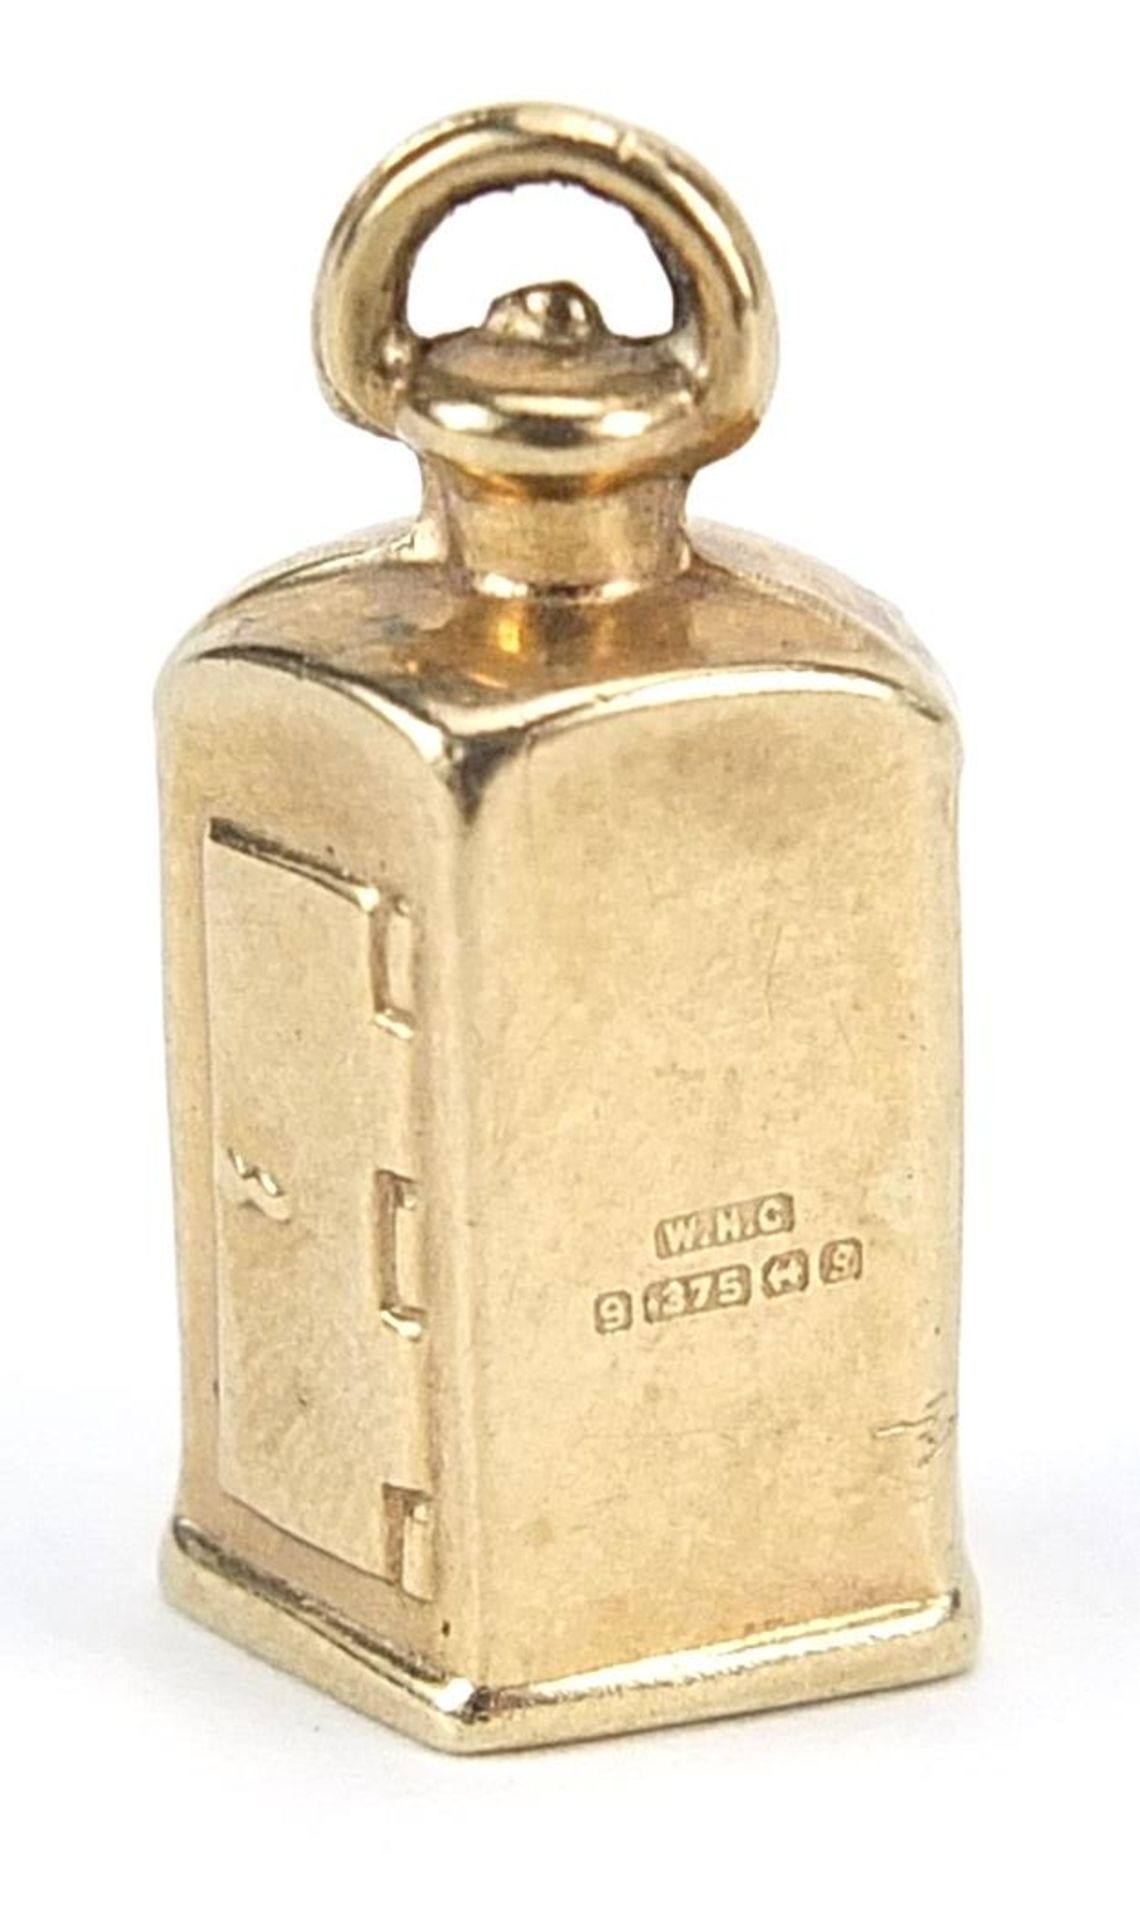 9ct gold ship's starboard lantern charm, 2cm high, 1.5g - Bild 2 aus 3